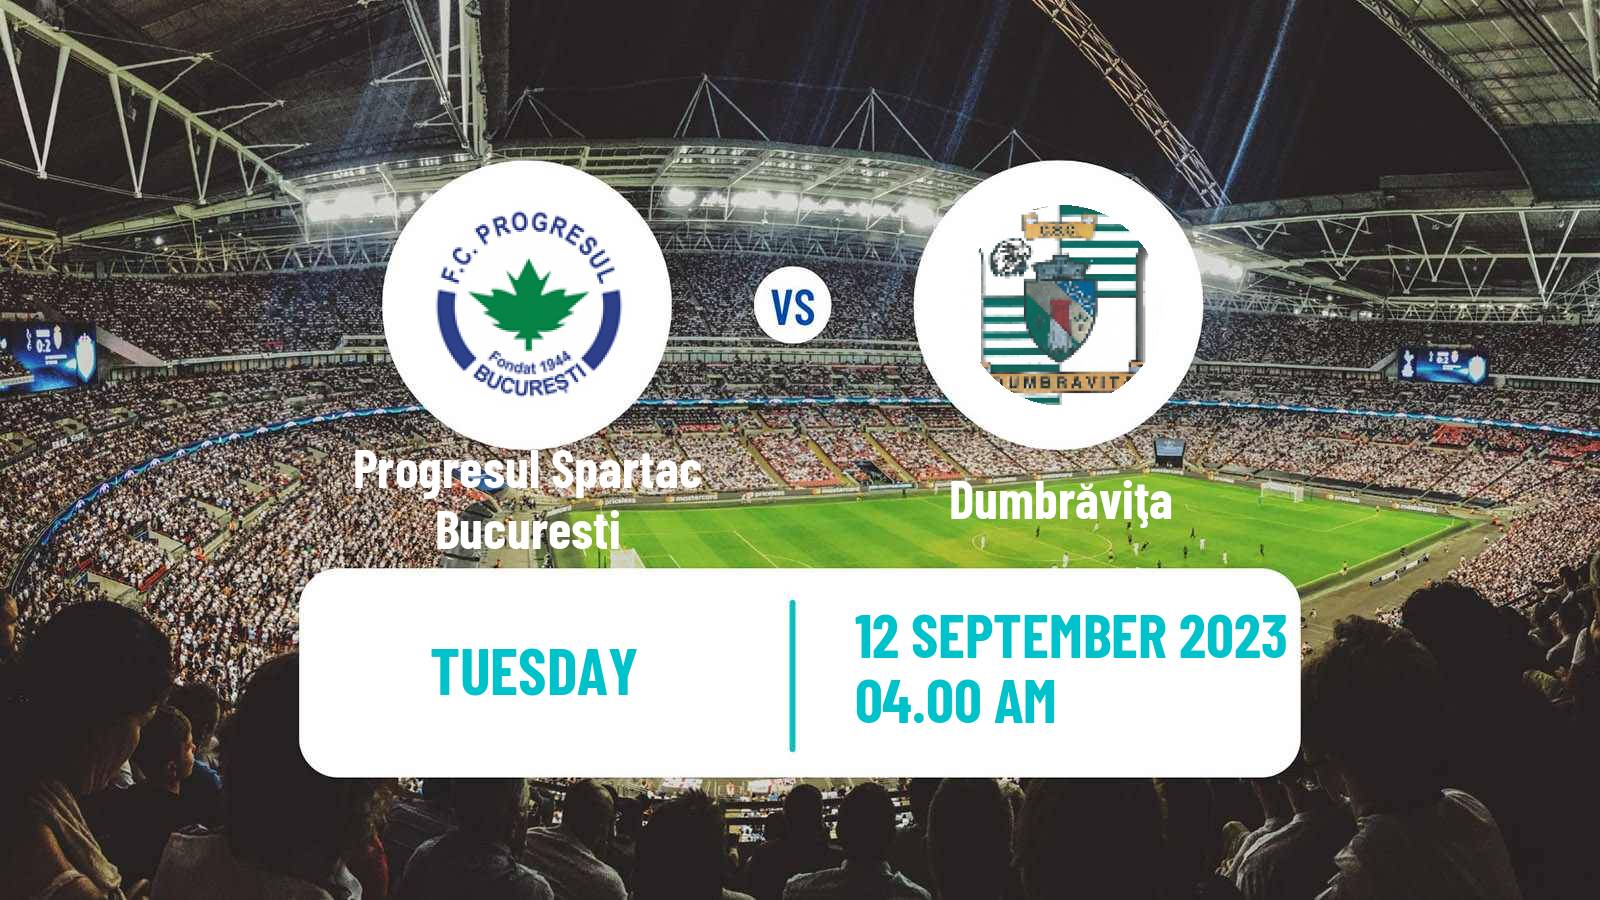 Soccer Romanian Division 2 Progresul Spartac Bucuresti - Dumbrăviţa